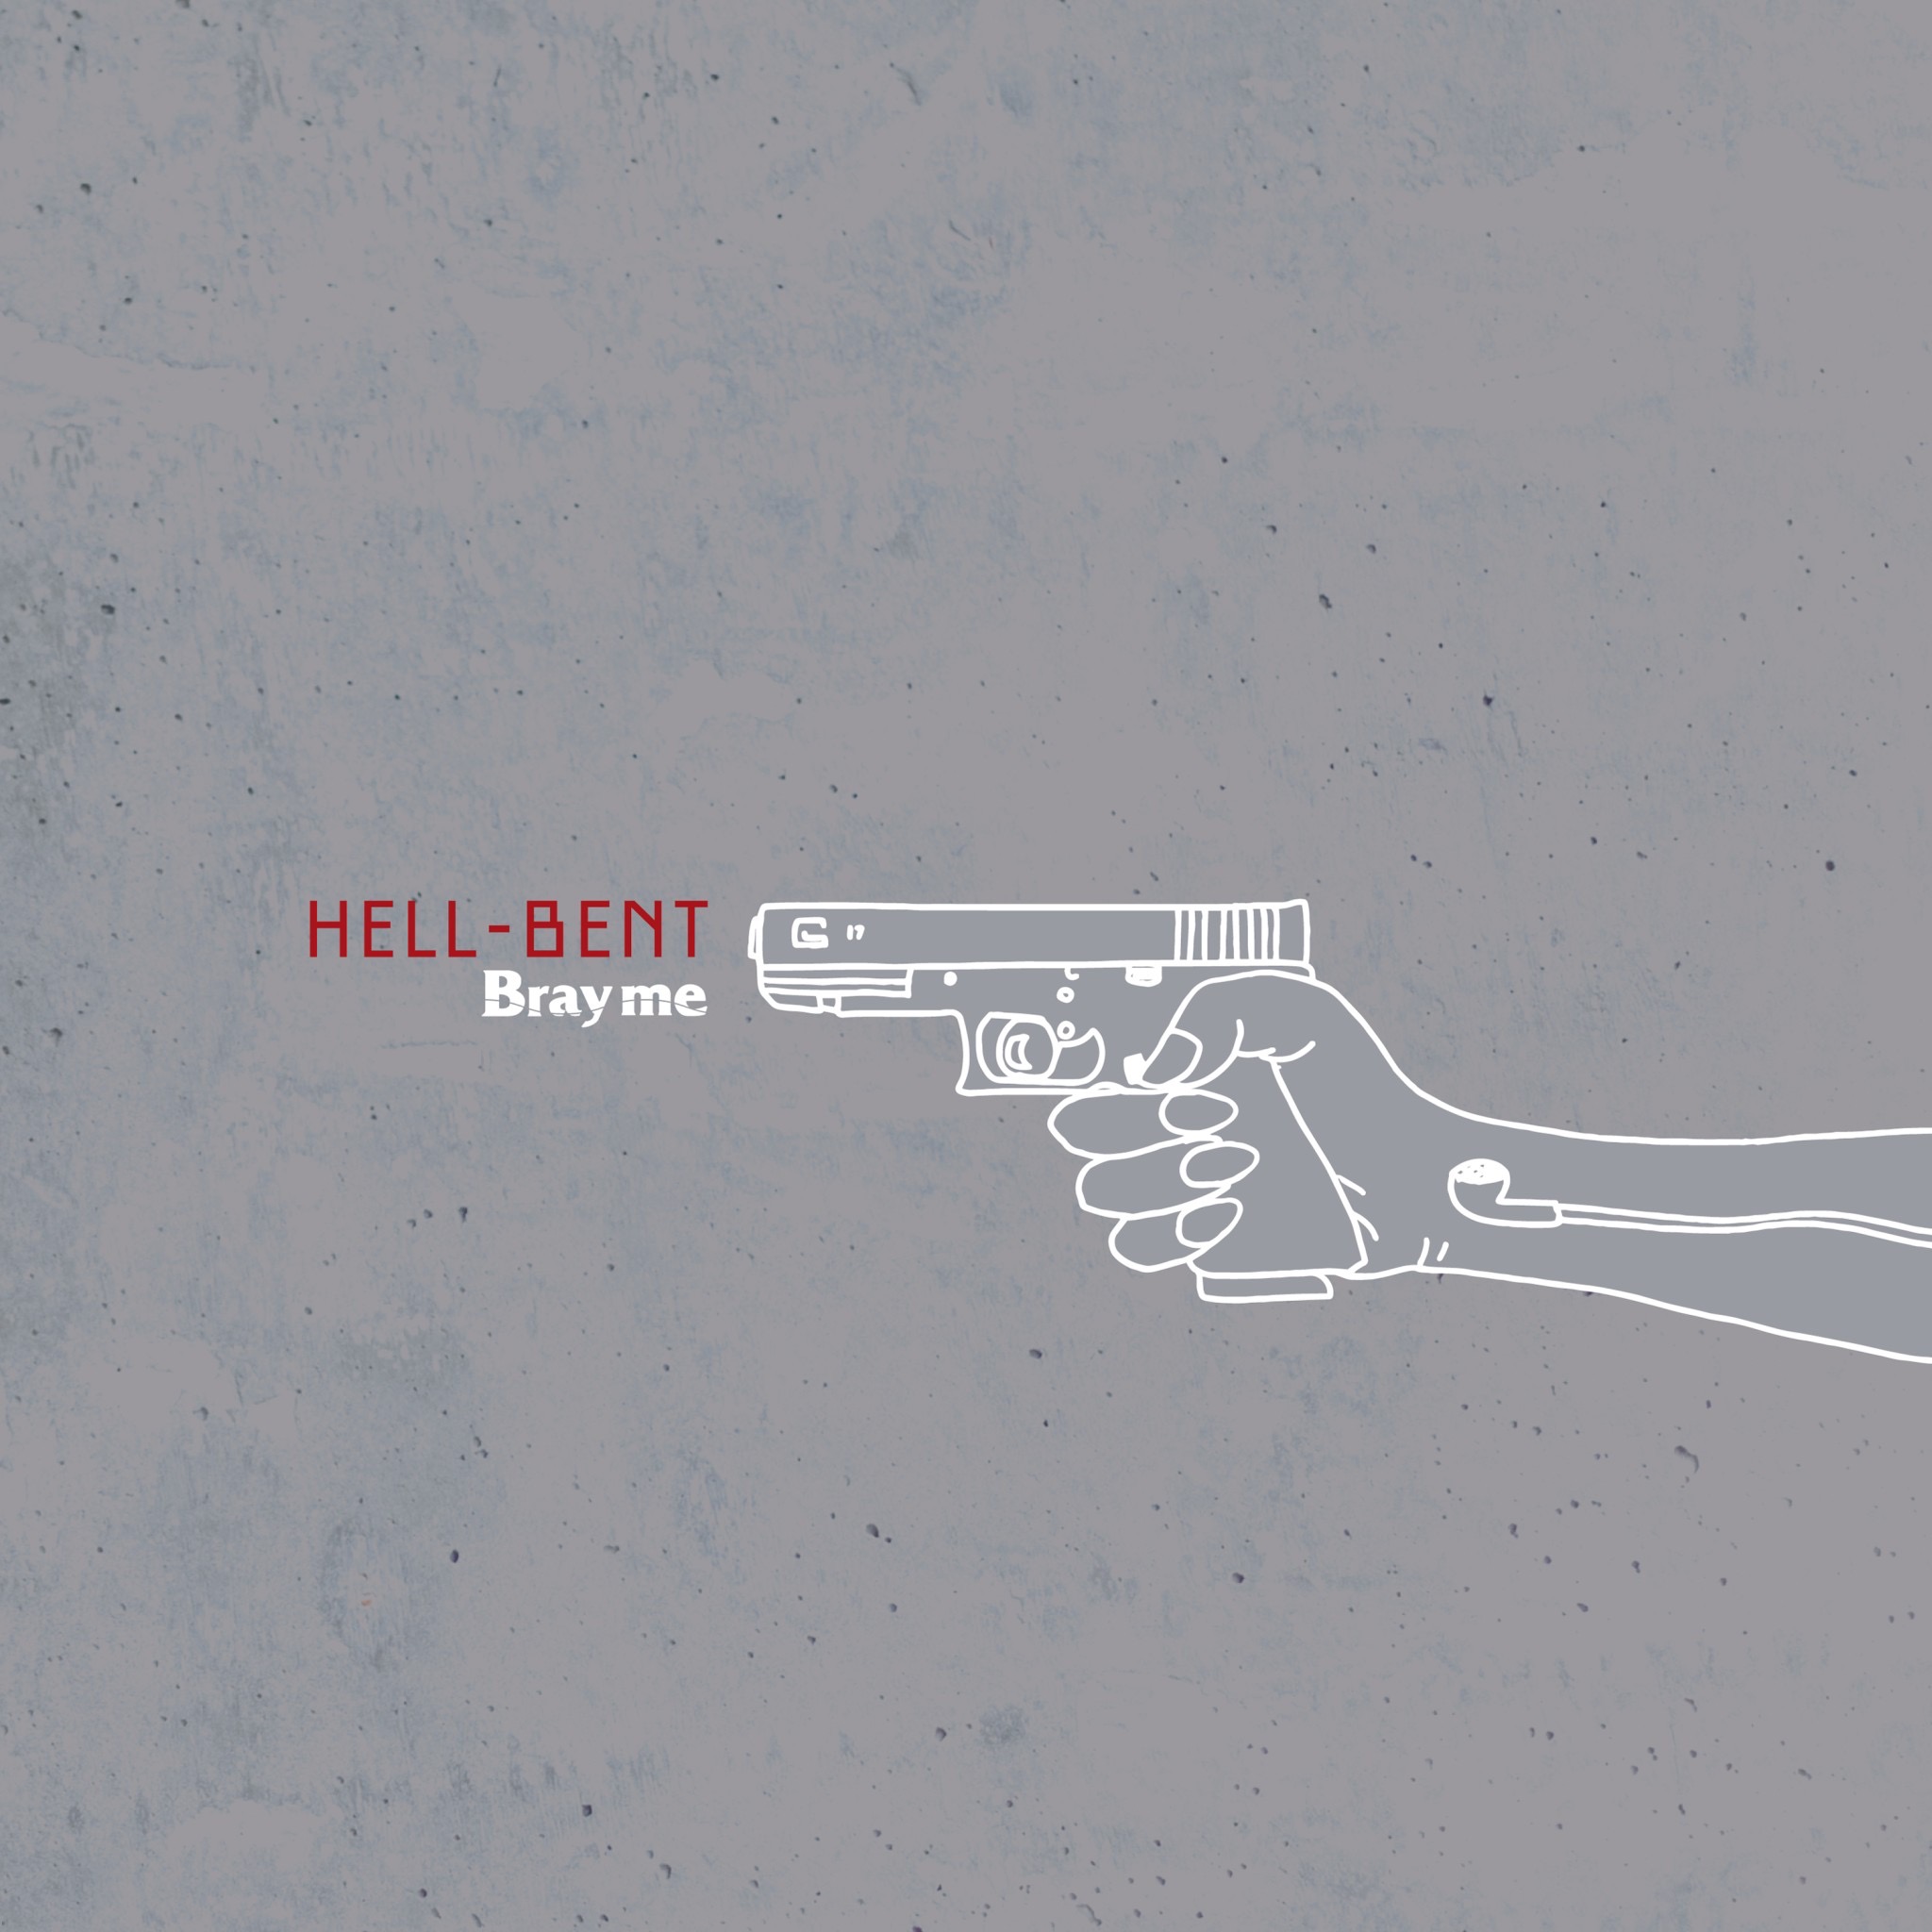 New mini album『HELL-BENT』